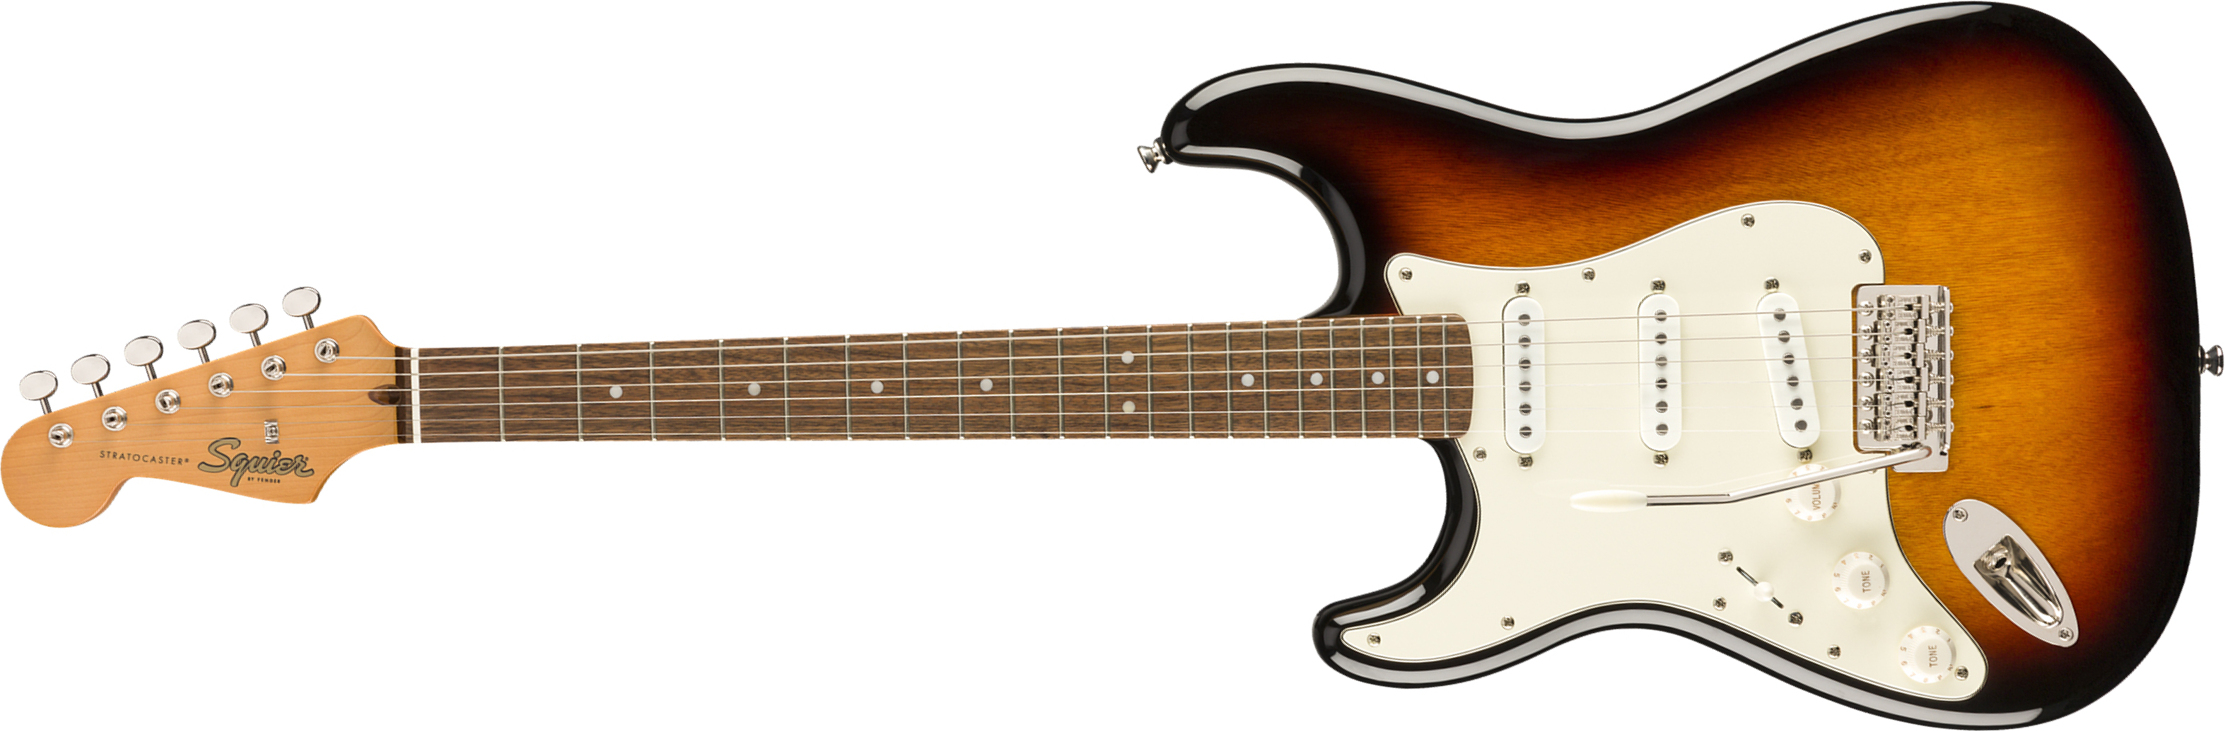 Squier Strat '60s Lh Gaucher Classic Vibe 2019 Lau - 3-color Sunburst - Left-handed electric guitar - Main picture